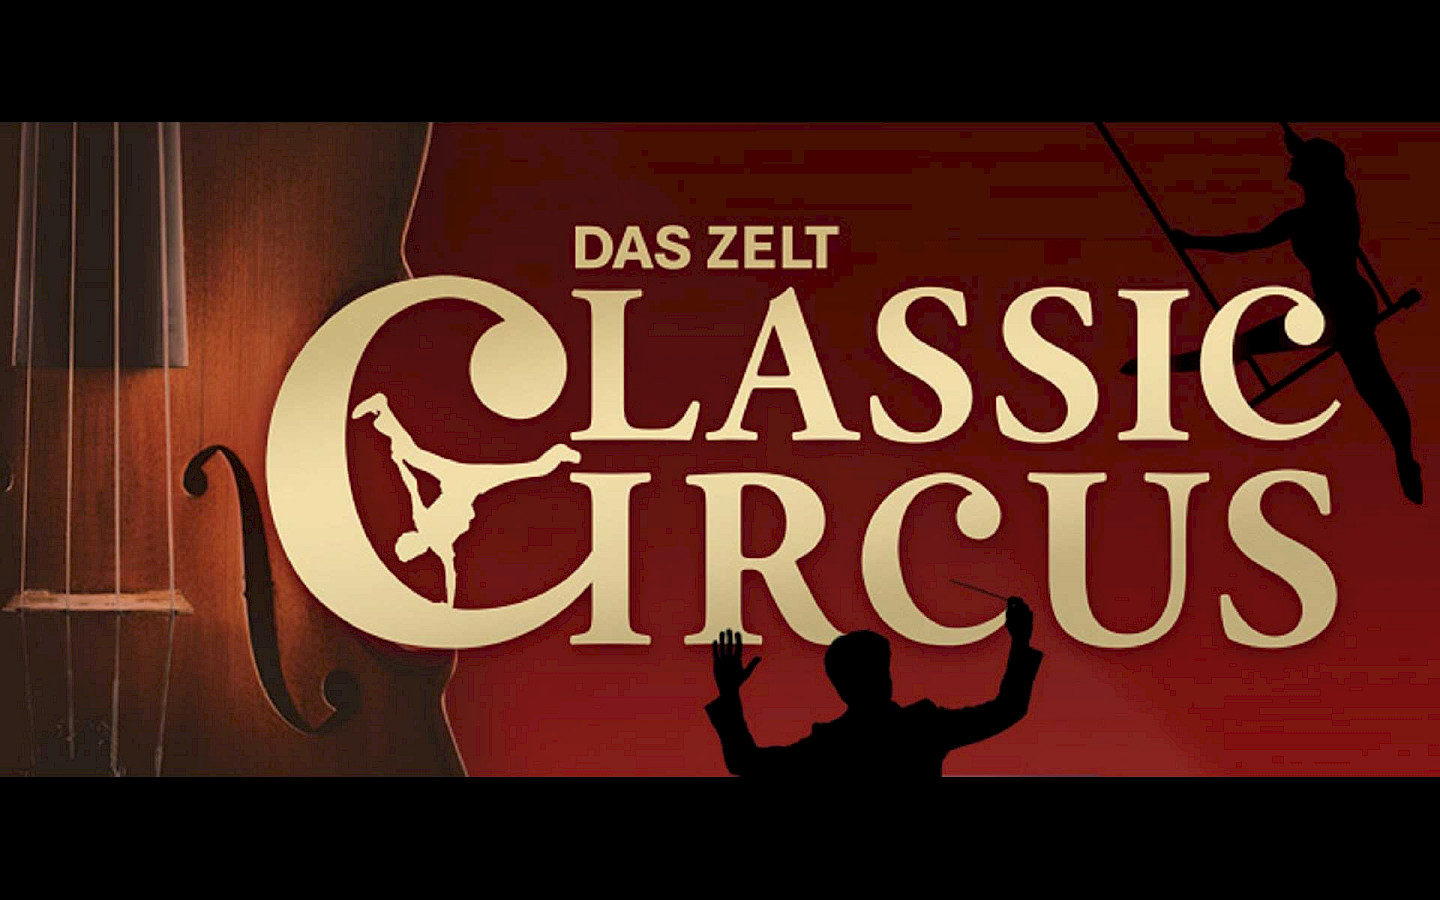  DAS ZELT - Classic Circus 